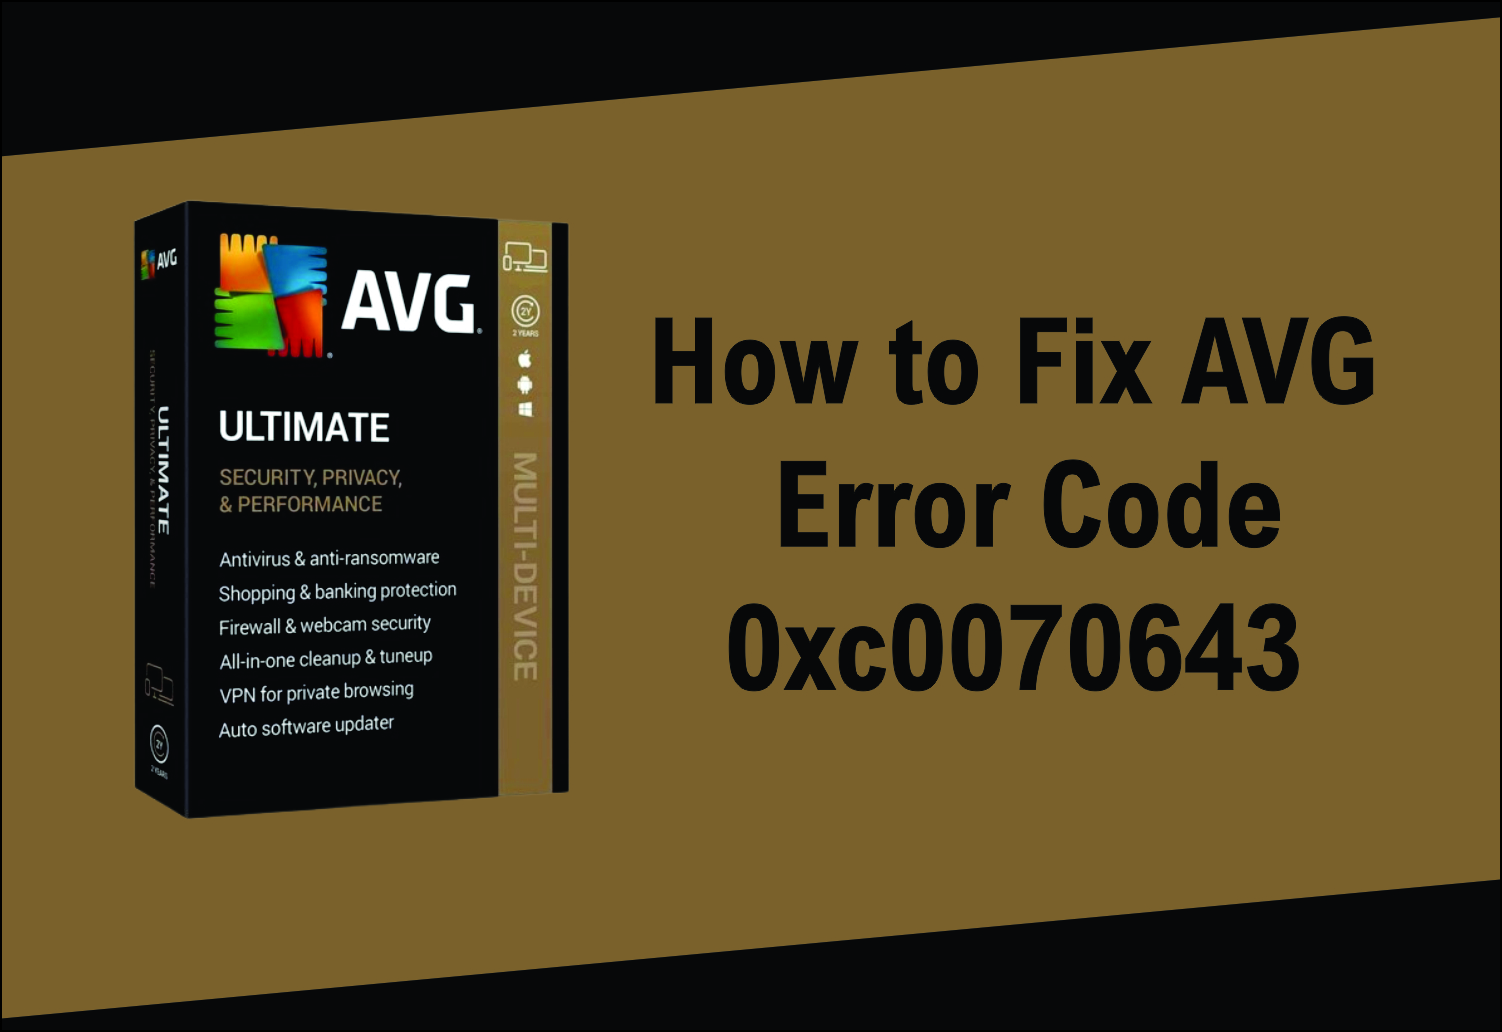 How to Fix AVG Error Code 0xc0070643